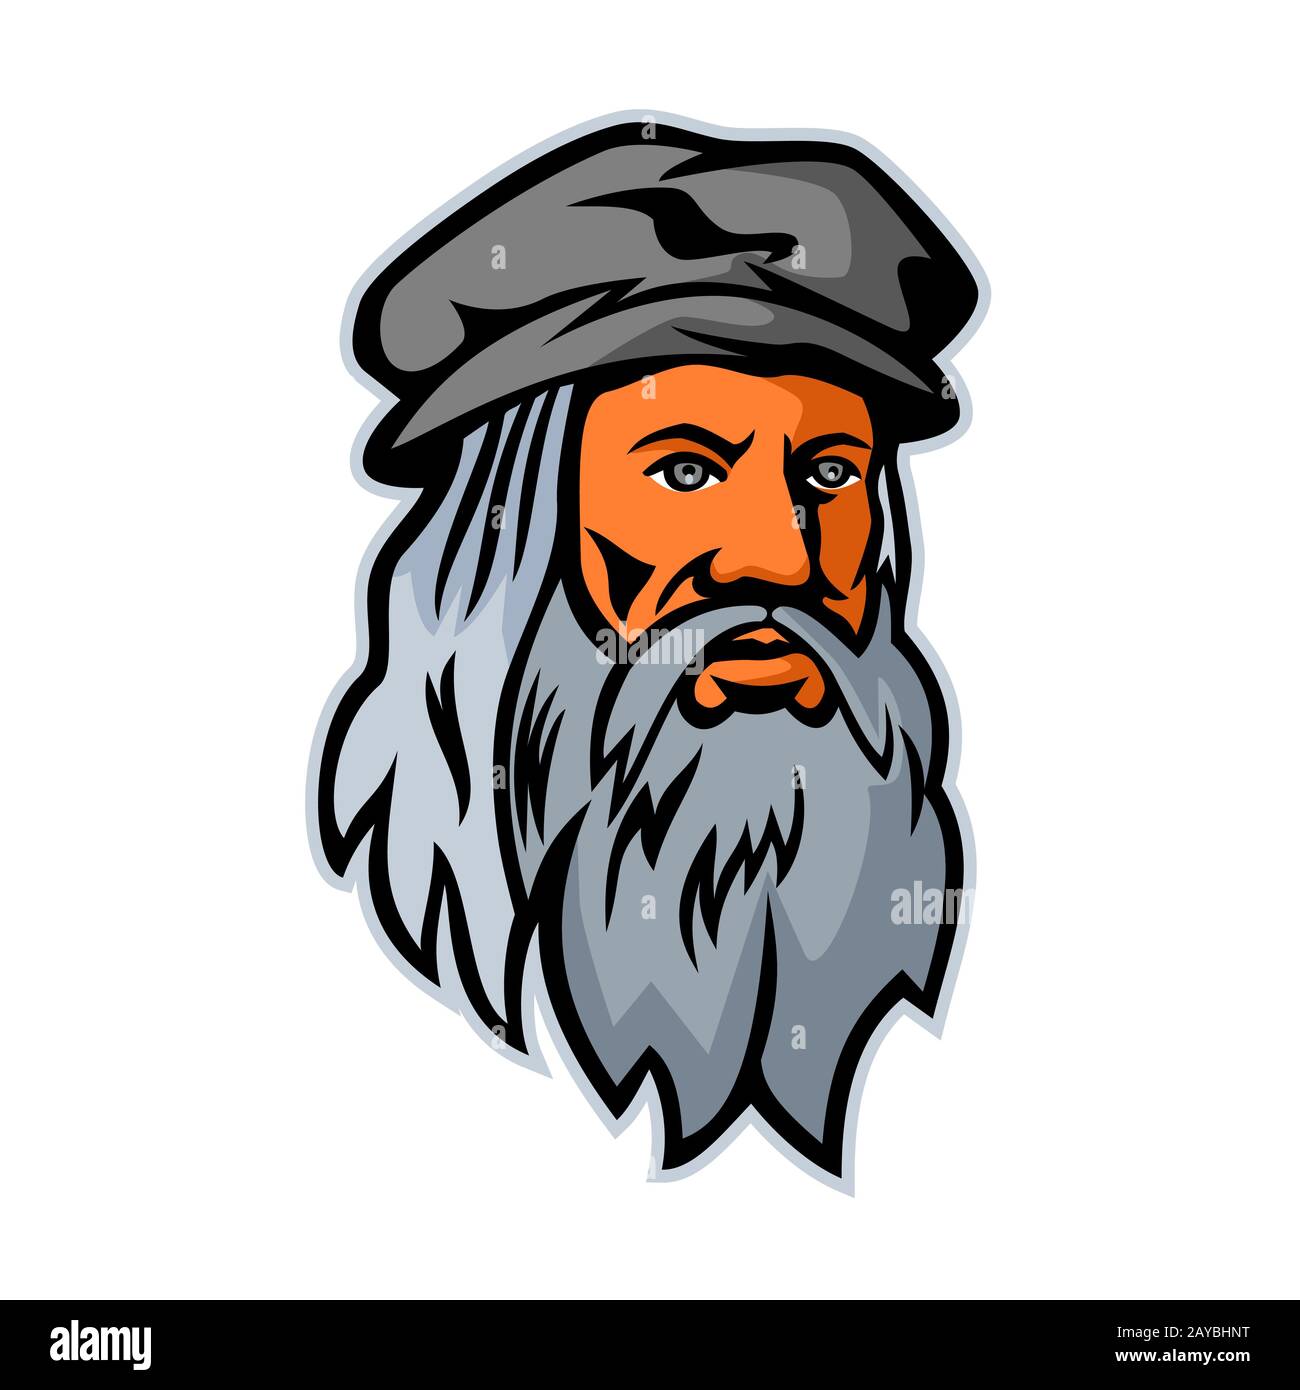 Leonardo da Vinci Head Mascot Stock Photo